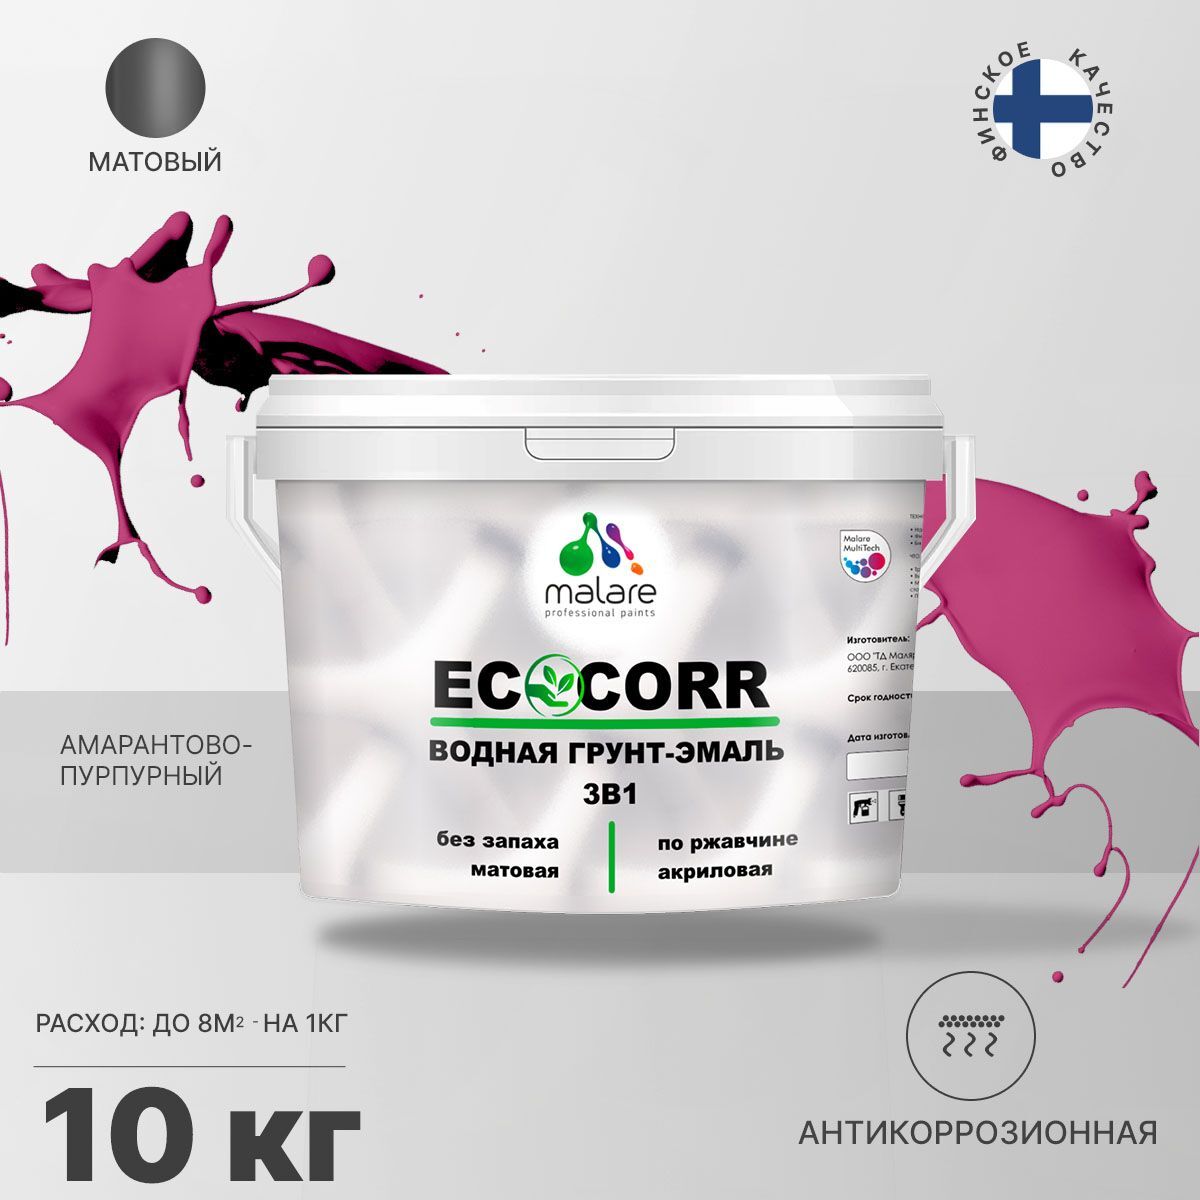 Грунт-эмаль 3 в 1 водная Malare EcoCorr антикоррозионная Акриловая, 10 кг амарантово-пурпурный